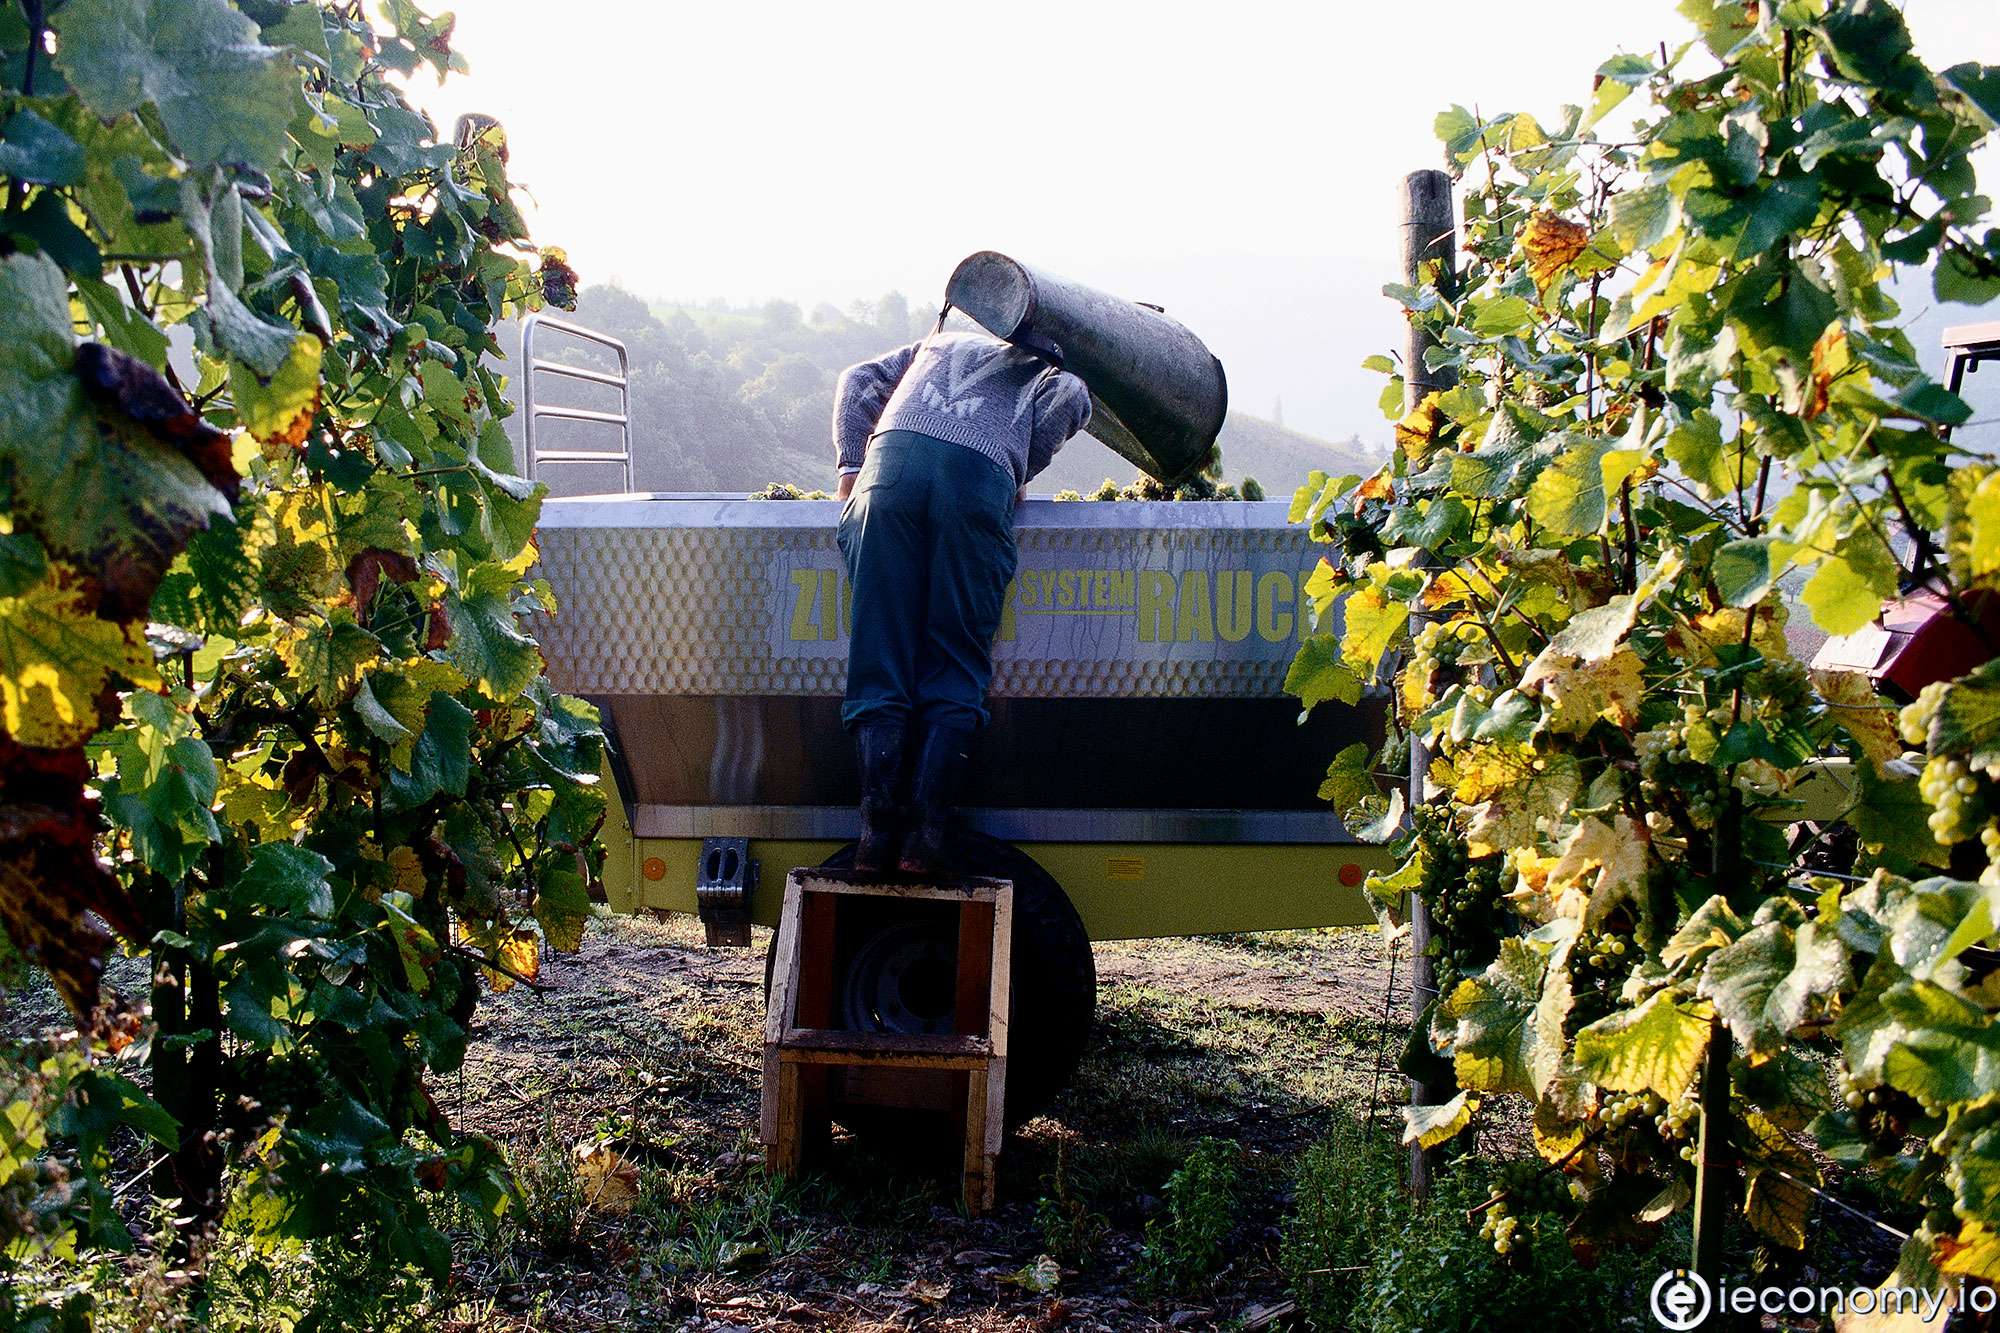 Güney Avrupa'daki şarap üretimi önemli ölçüde düşecek